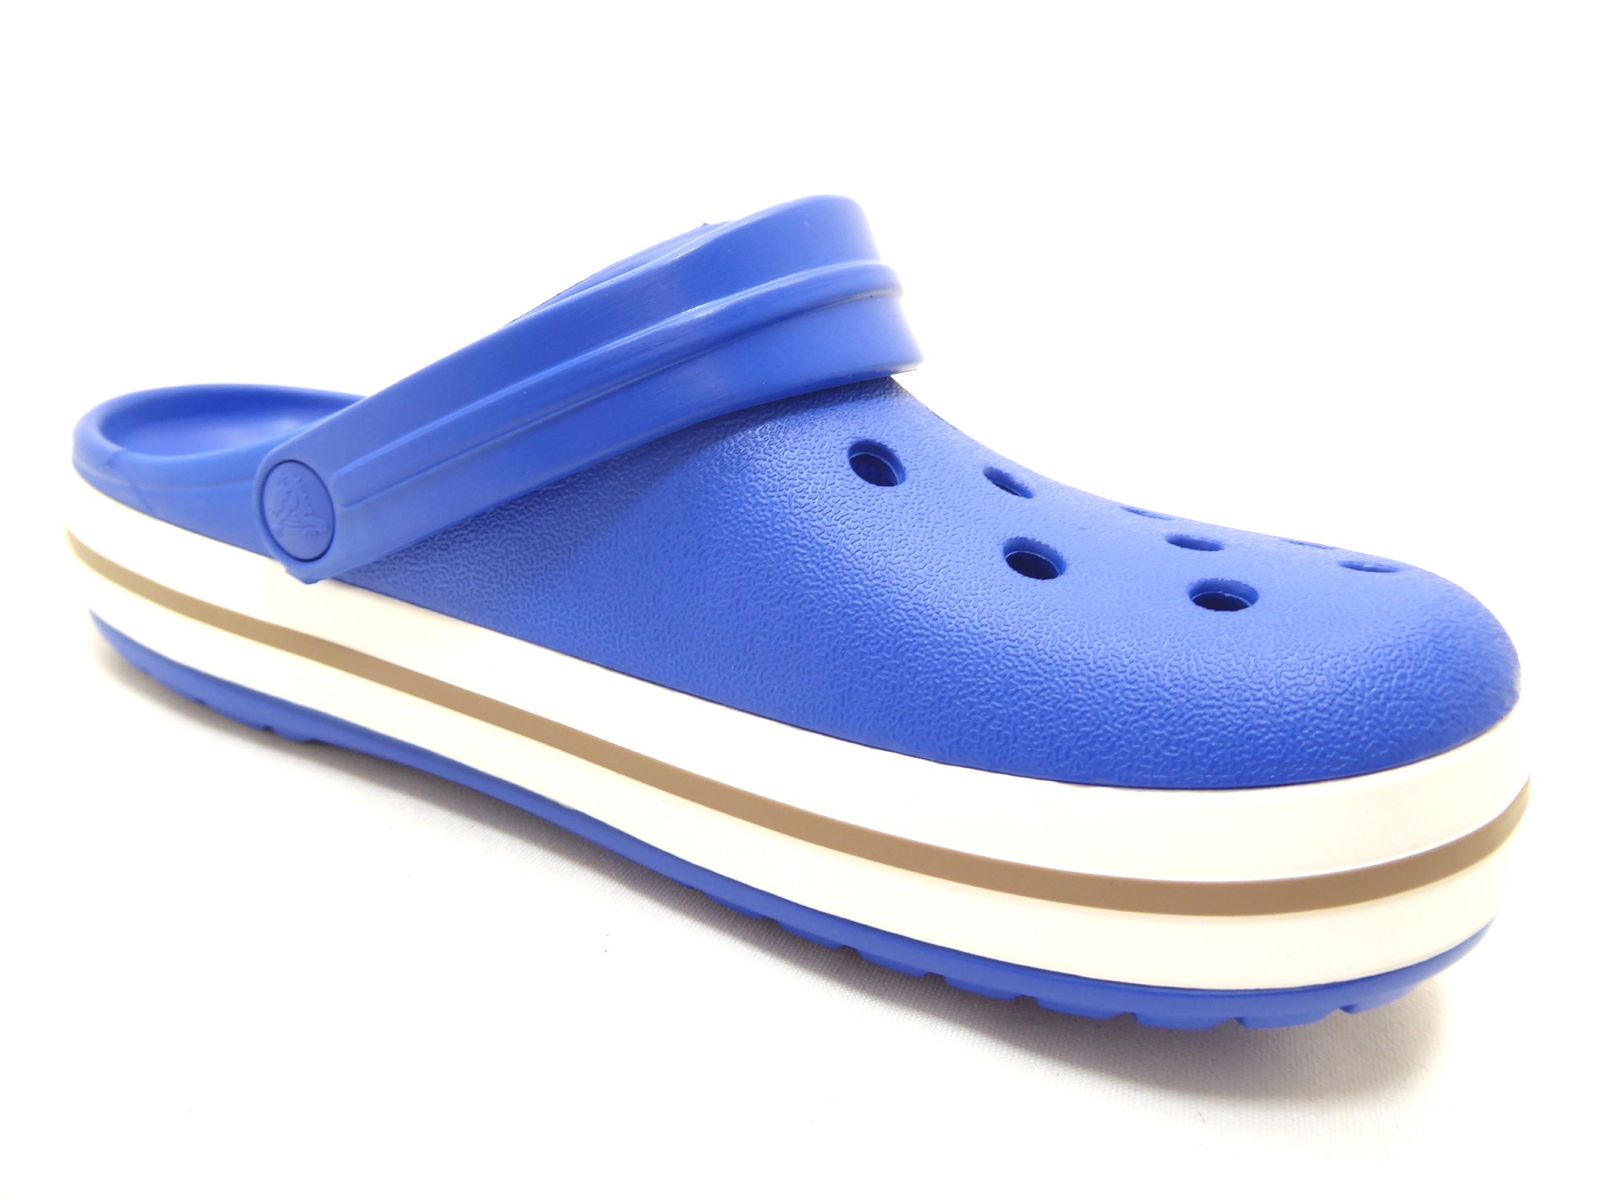 Schuh von Crocs, 42